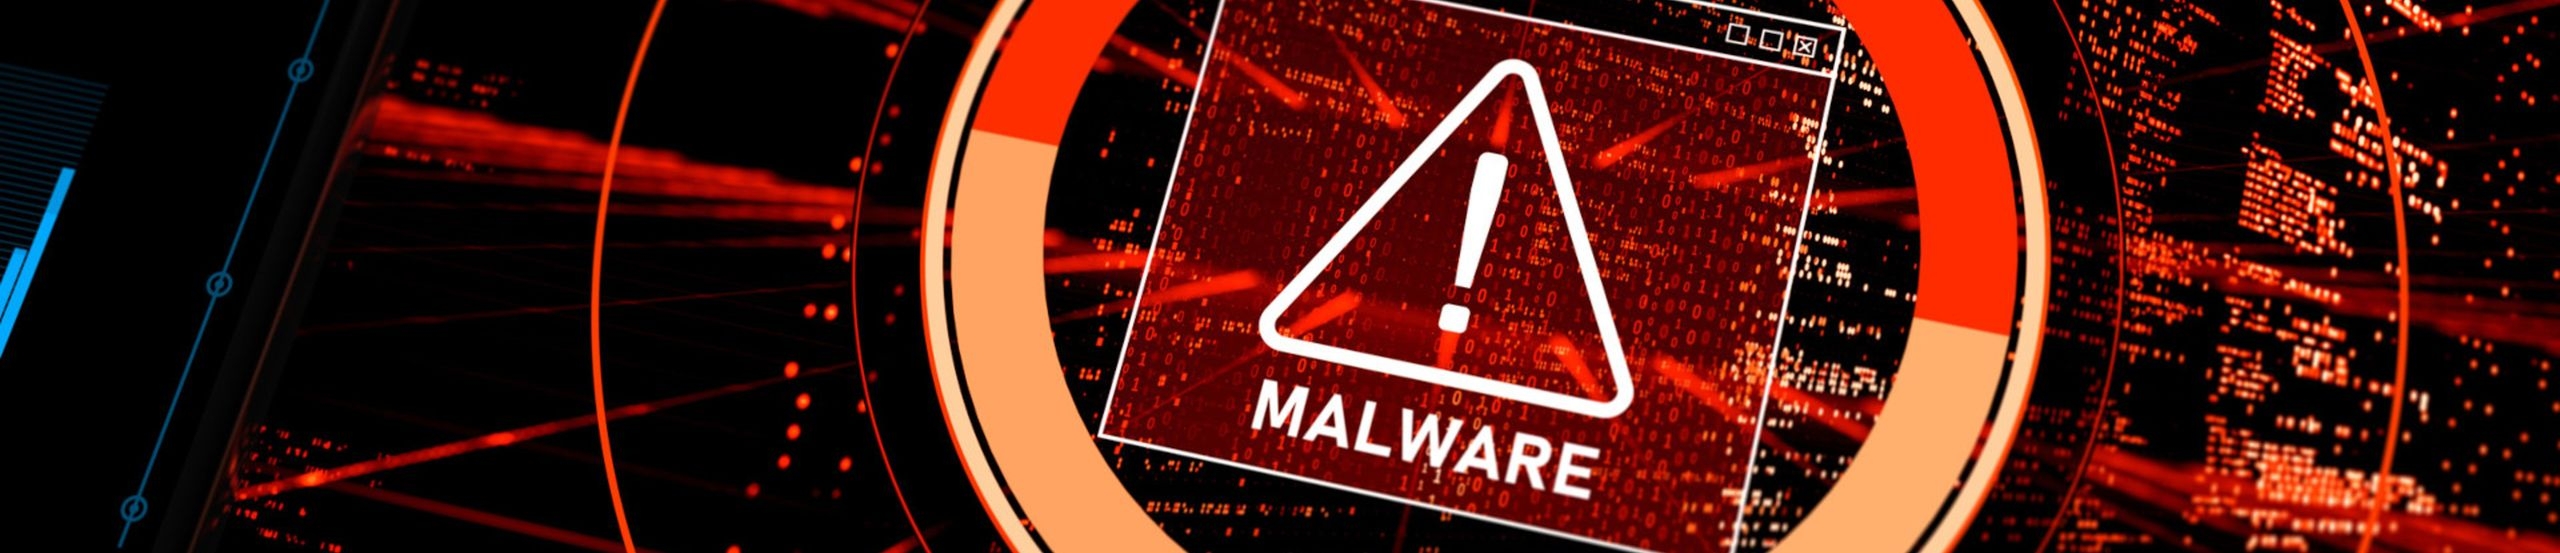 Ein rotes Ausrufezeichen mit der Aufschrift Malware vor stilisiertem Programmcode